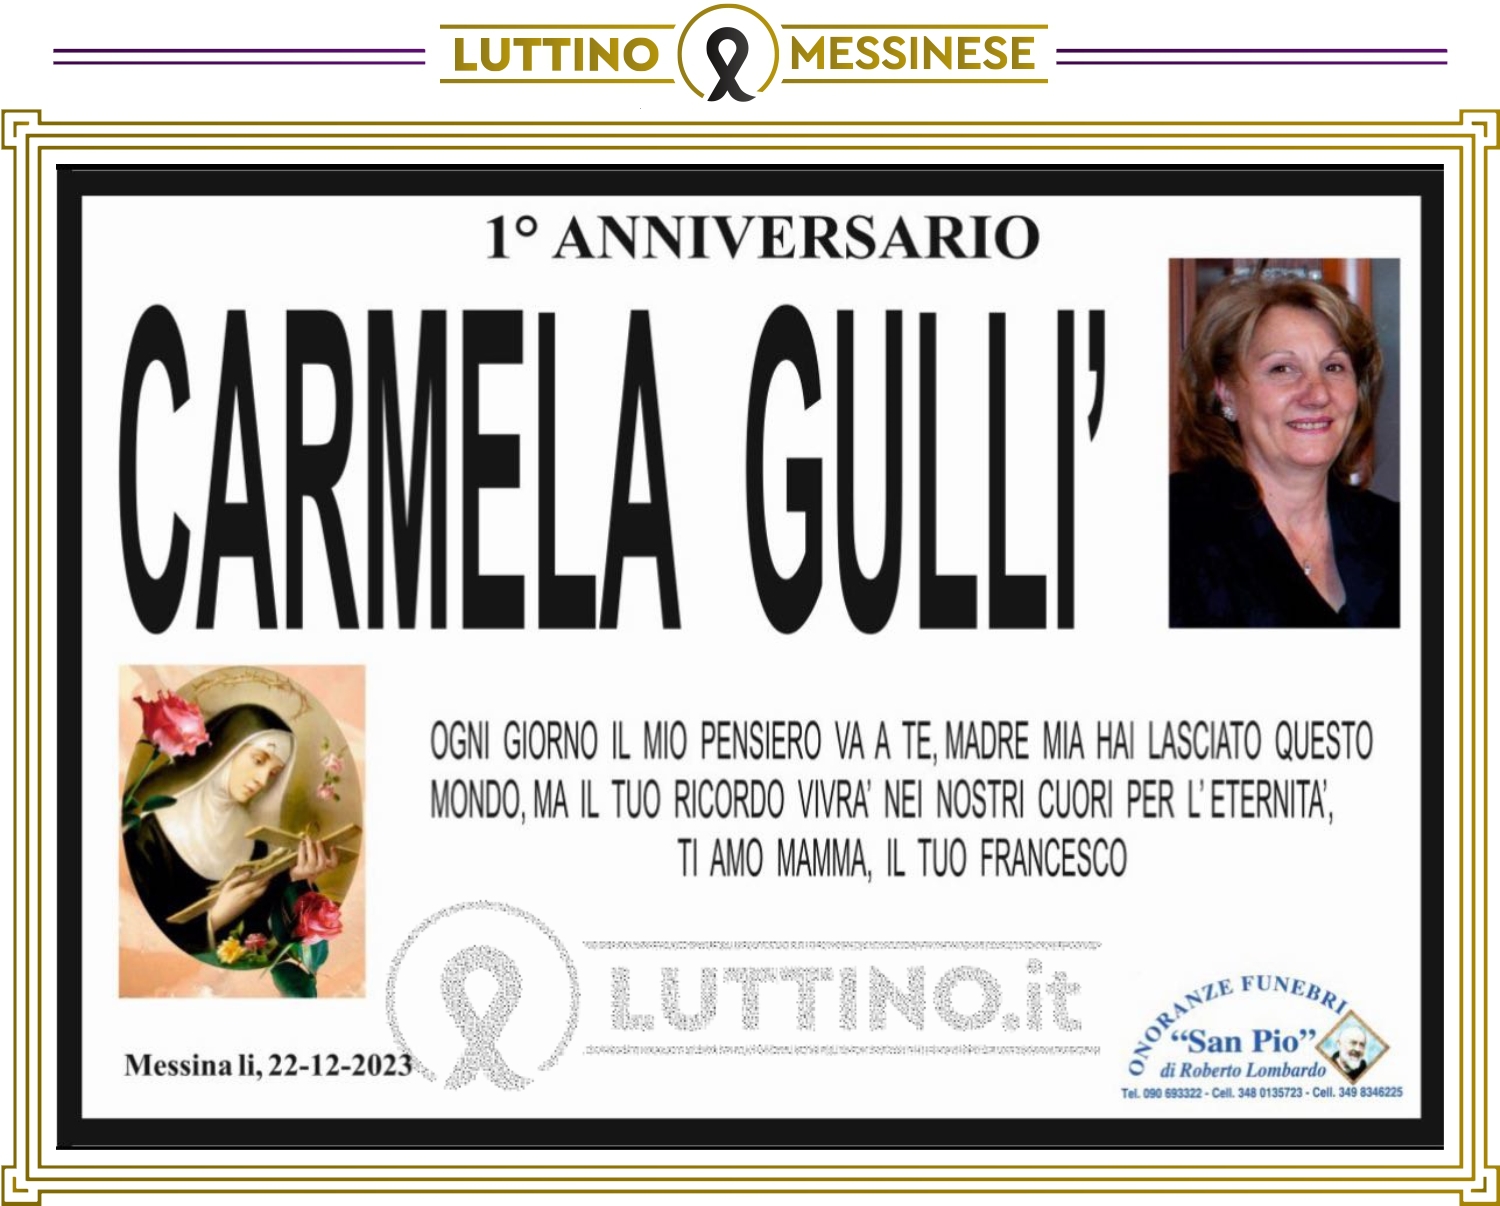 Carmela Gullí